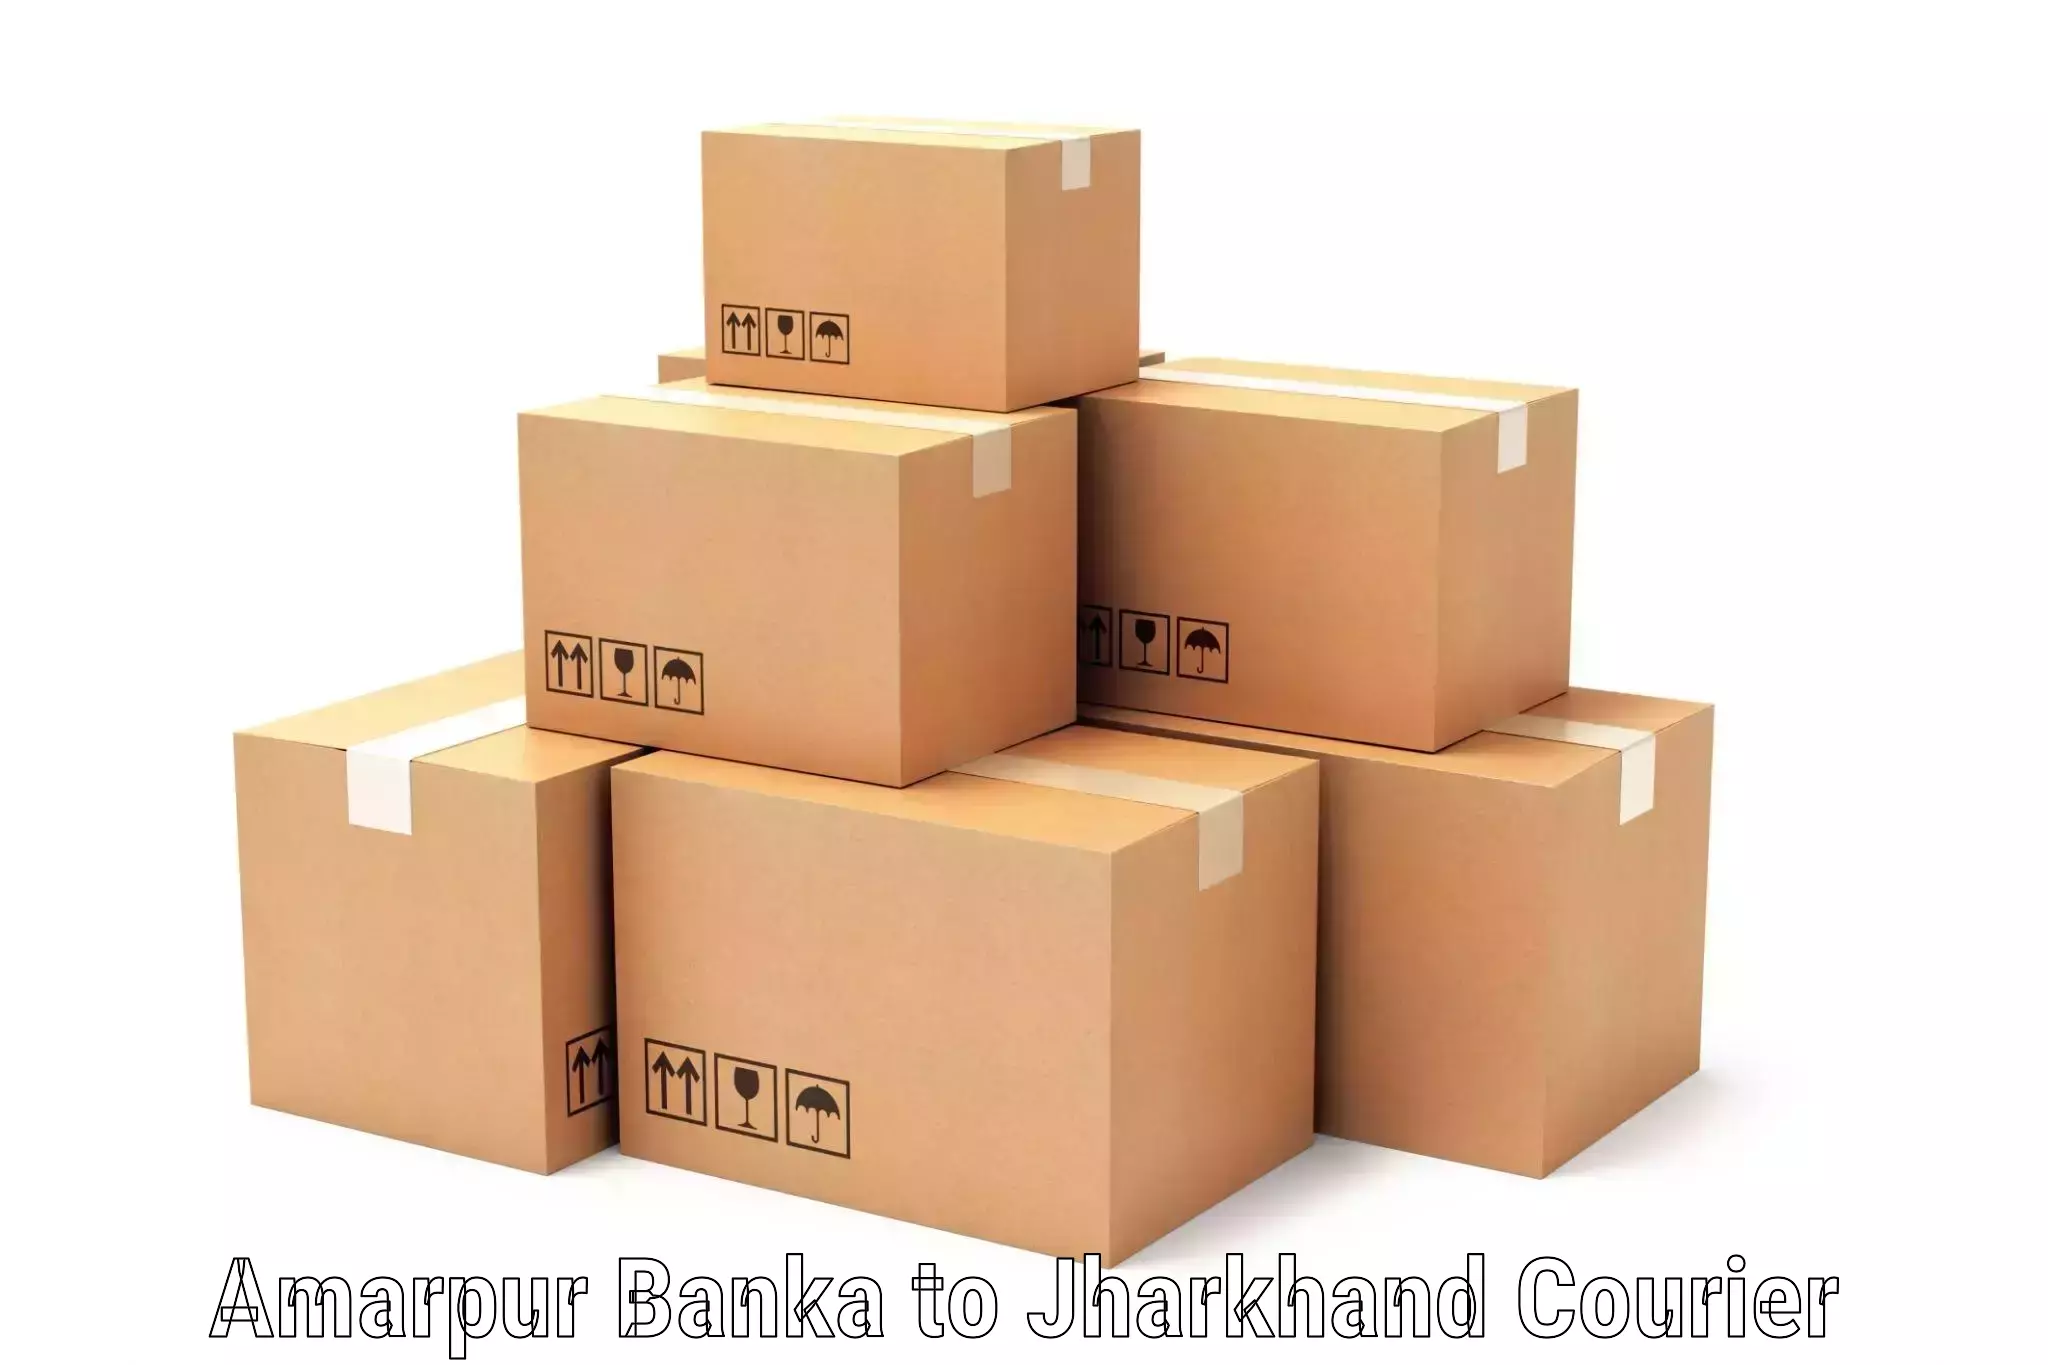 Enhanced shipping experience Amarpur Banka to IIIT Ranchi